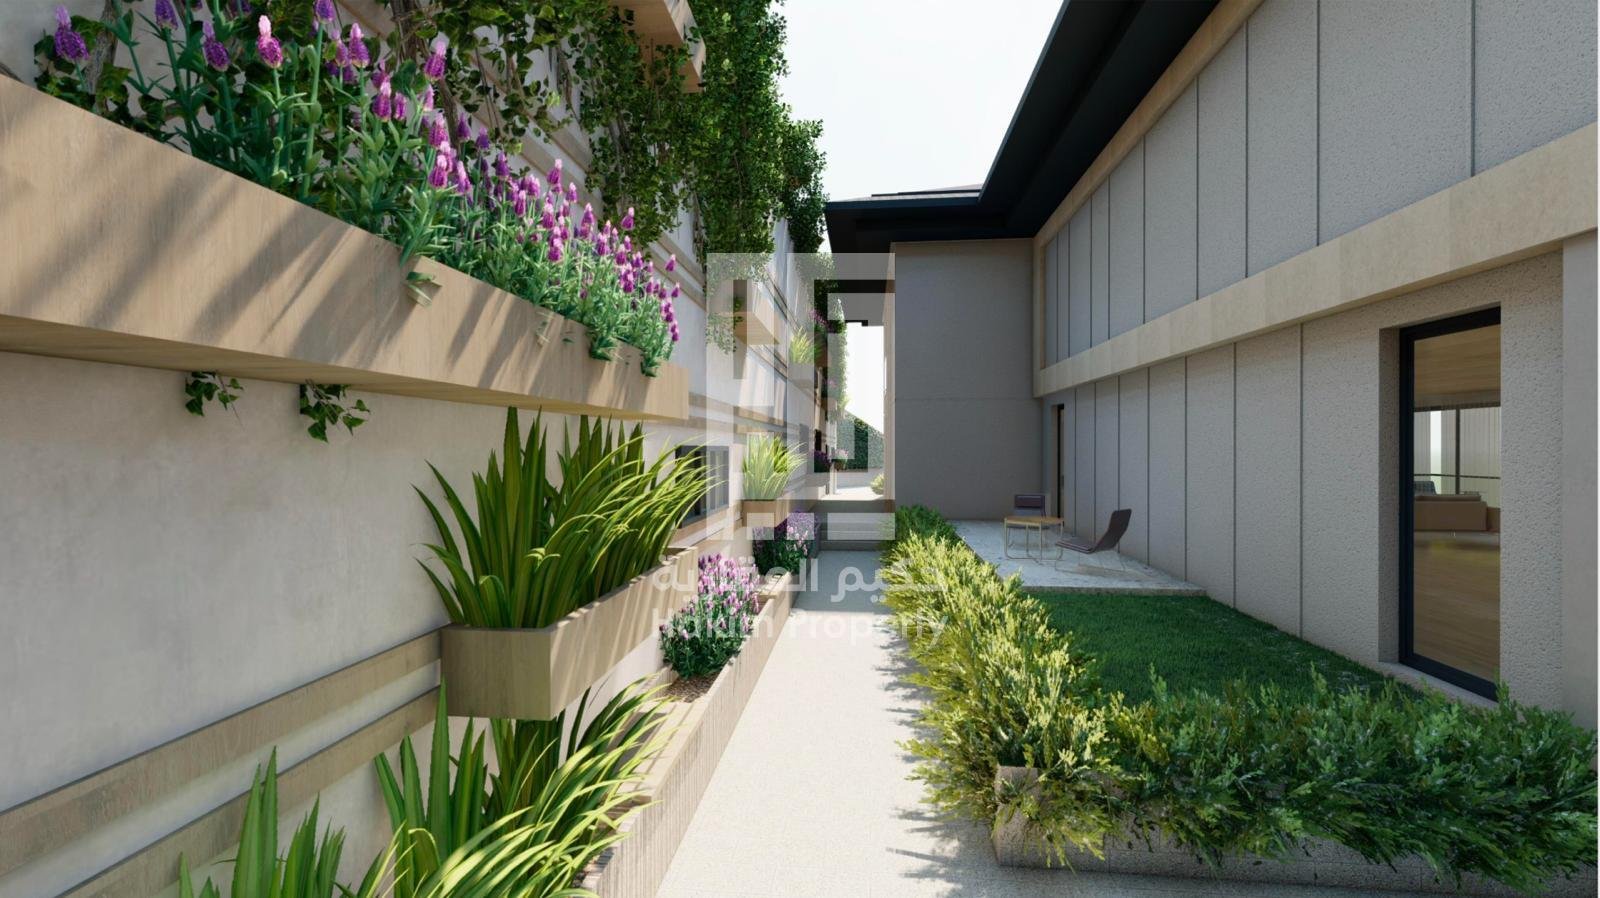 پروژه سرمایه گذاری و مسکونی در منطقه سرییر